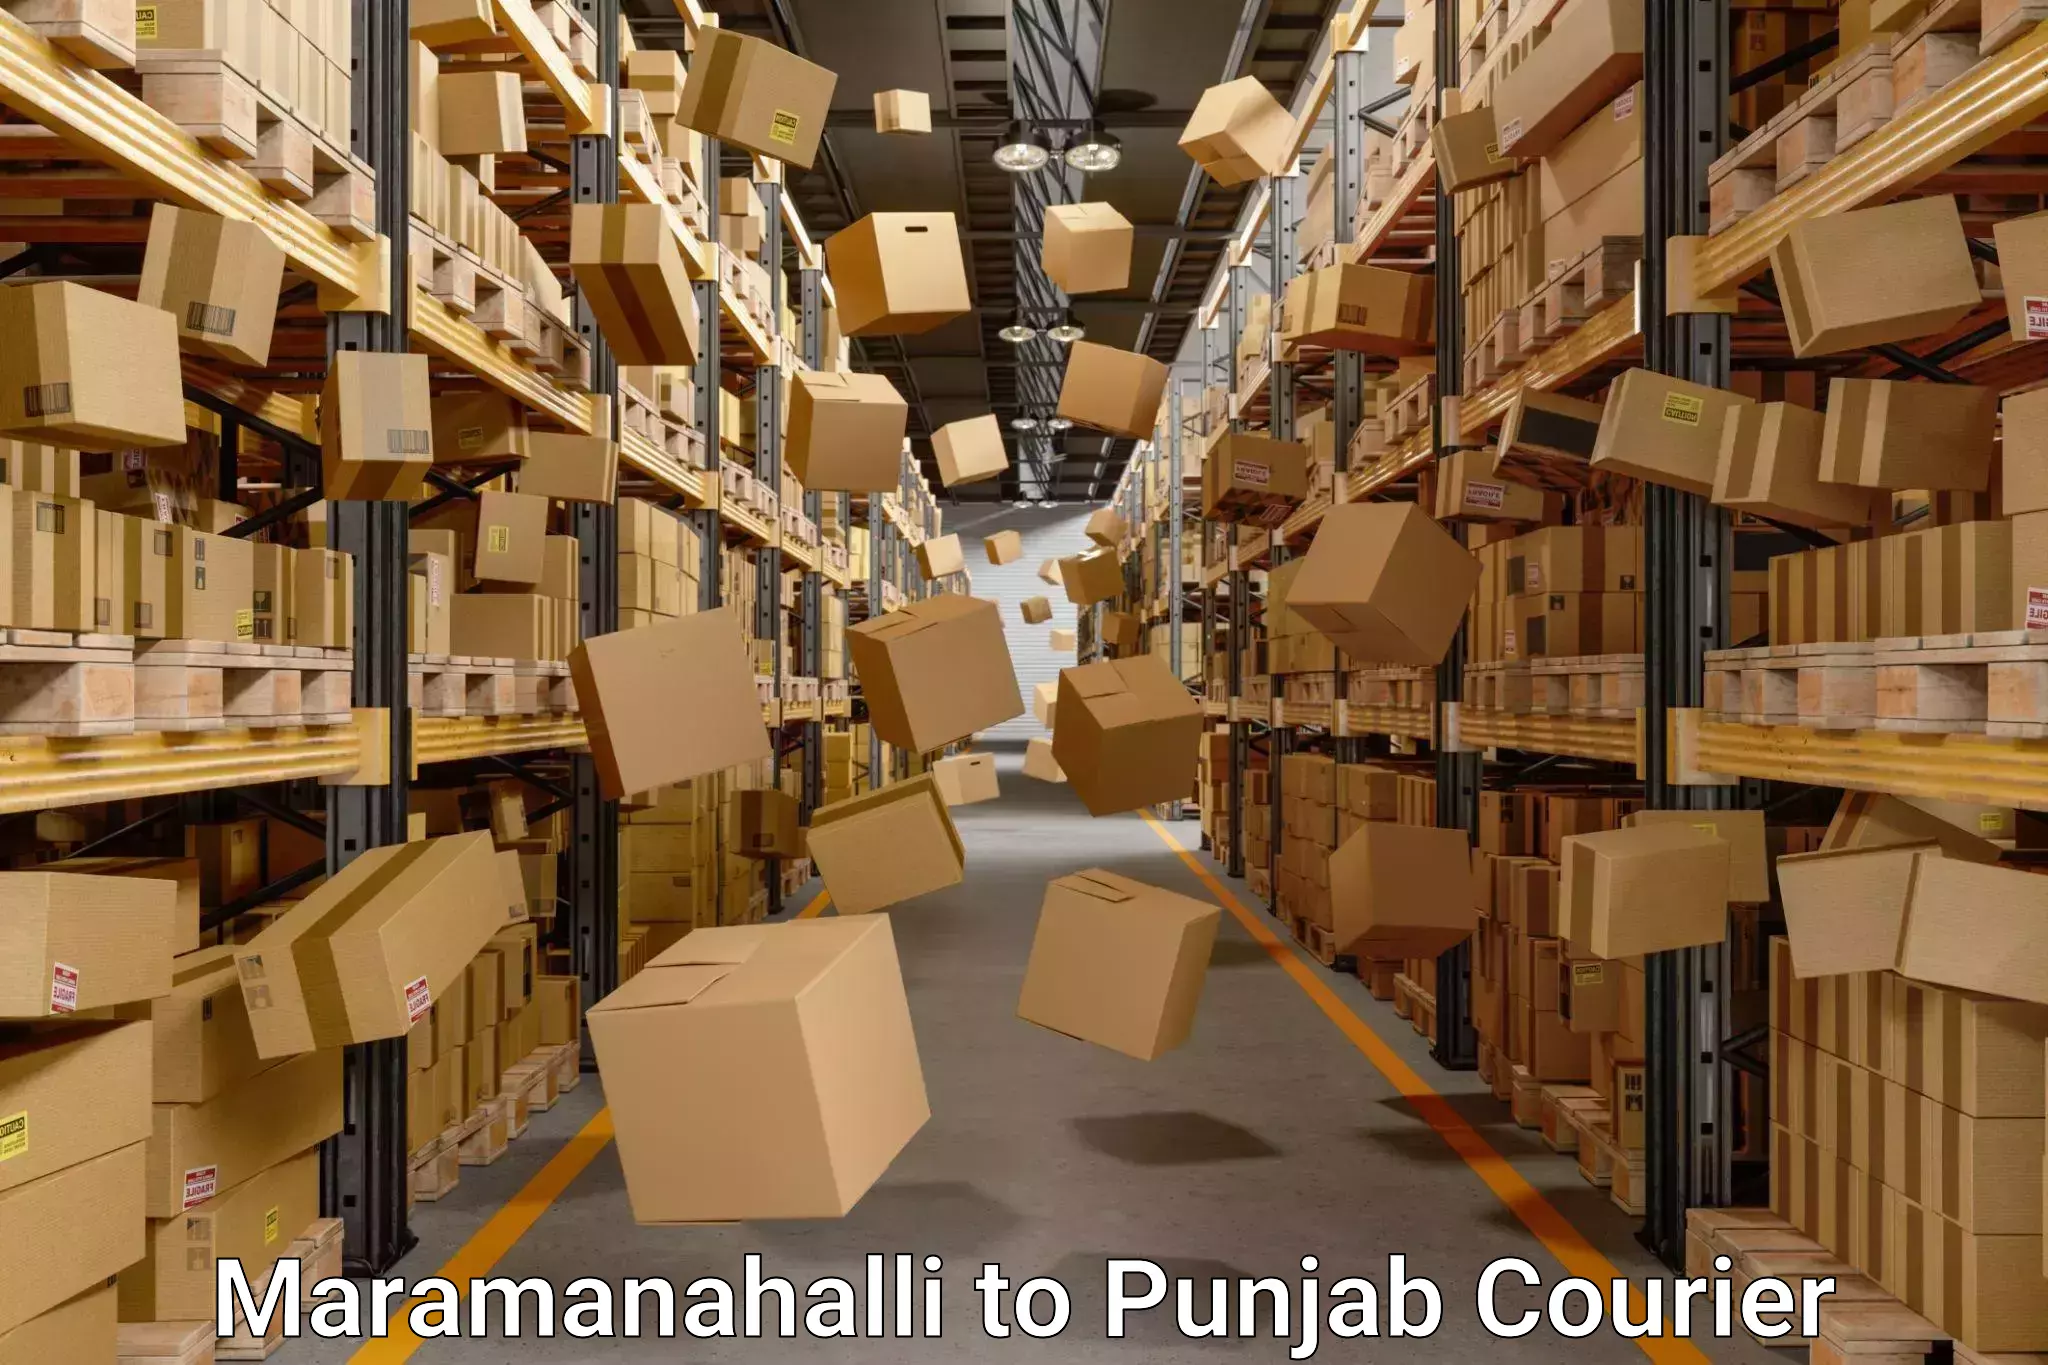 Door-to-door relocation services Maramanahalli to Punjab